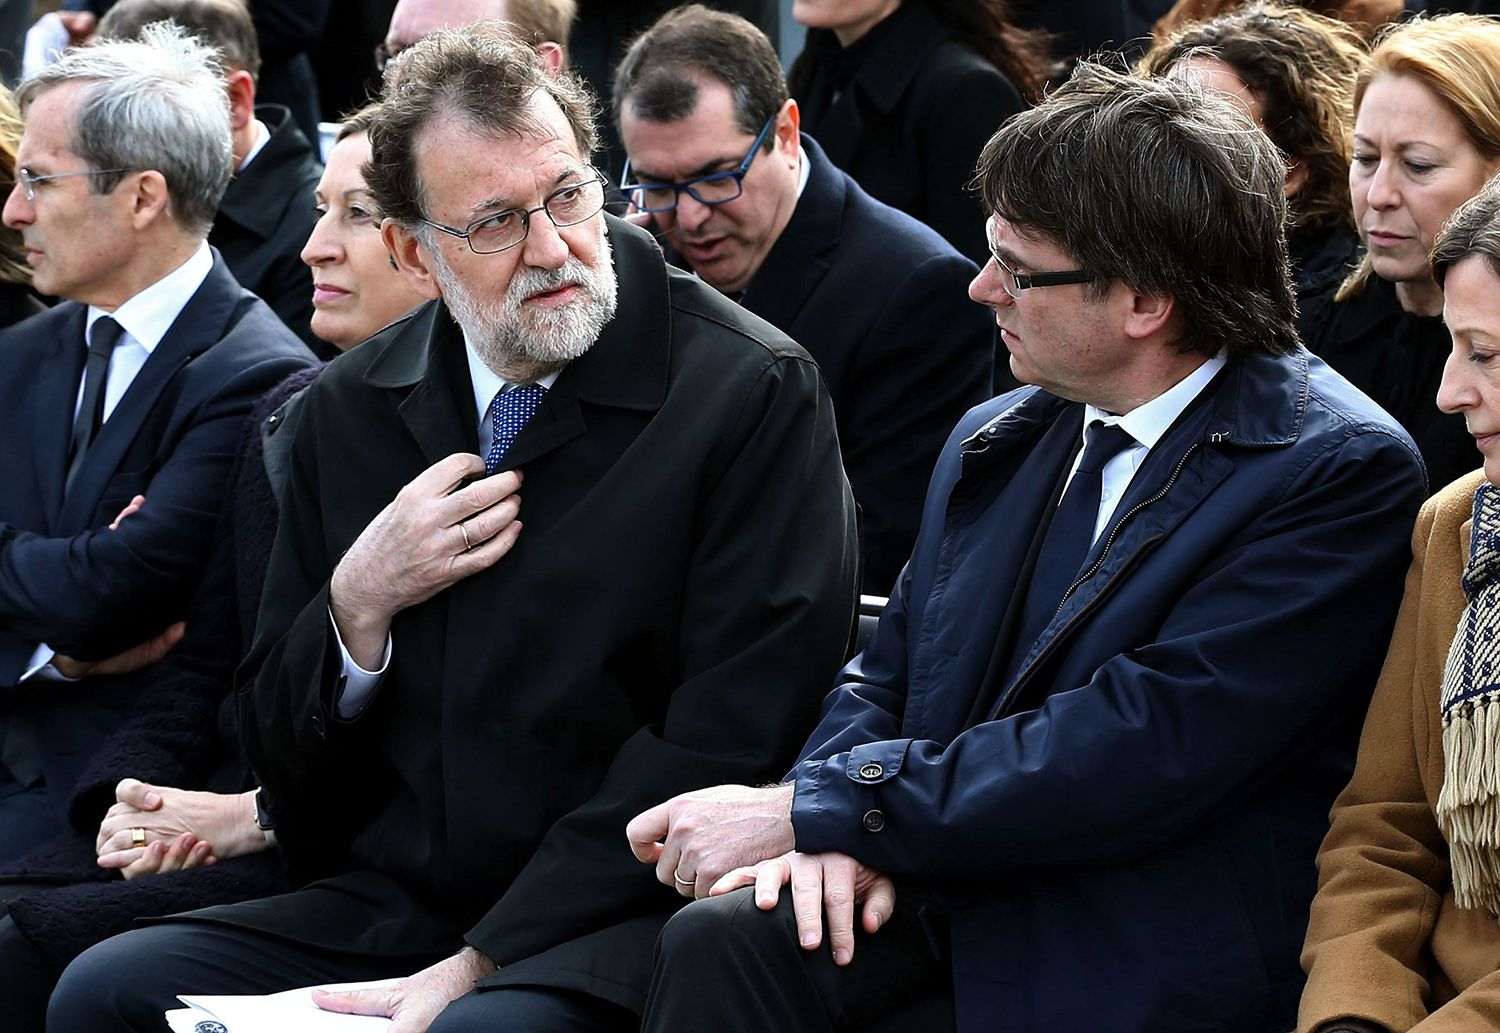 Frialdad en el encuentro de Rajoy i Puigdemont en el acto de Germanwings